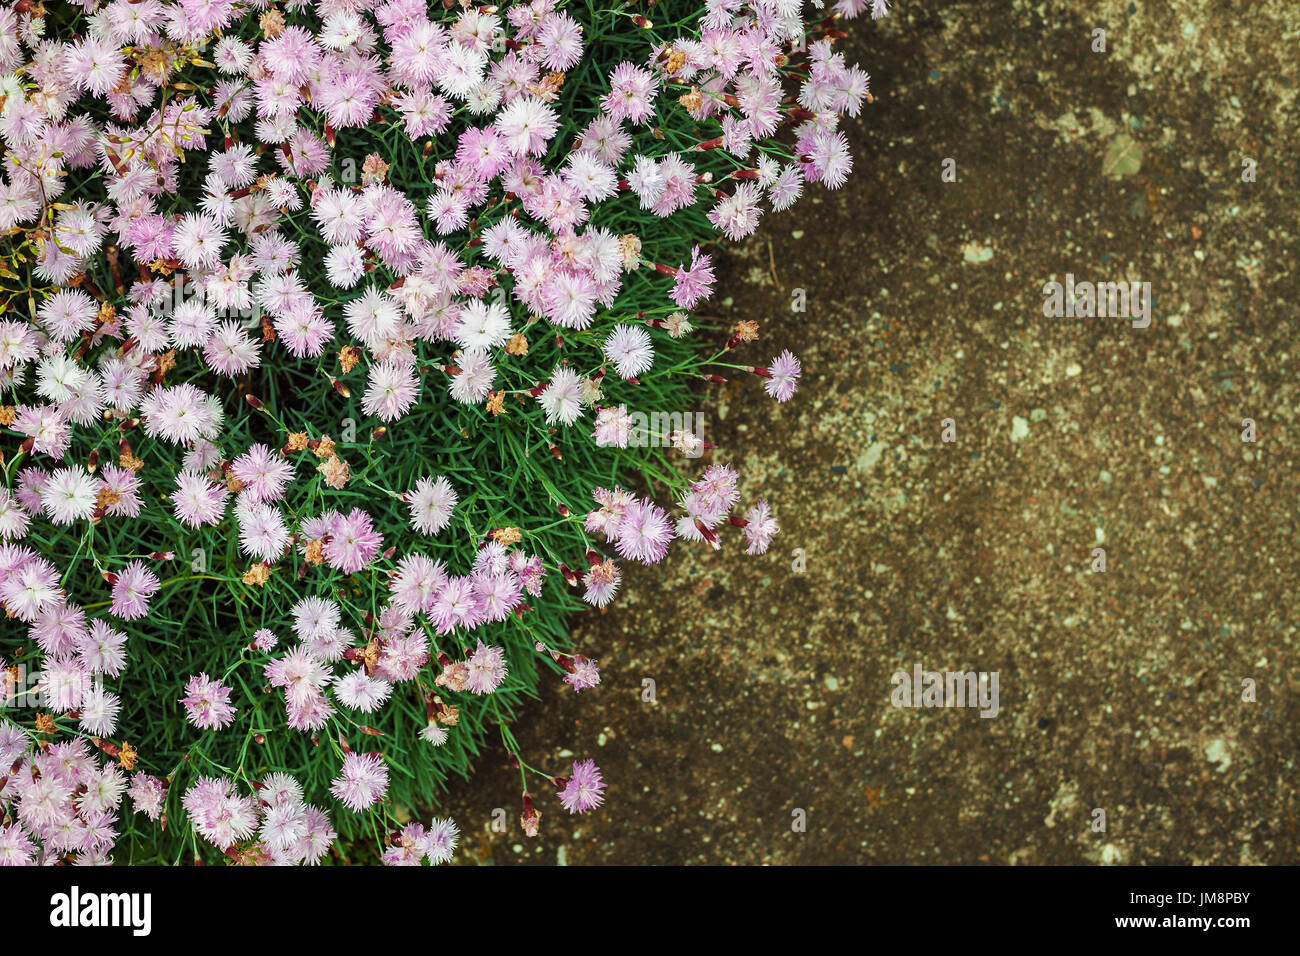 Details of outdoor garden flowers in grass on concrete floor. Stock Photo